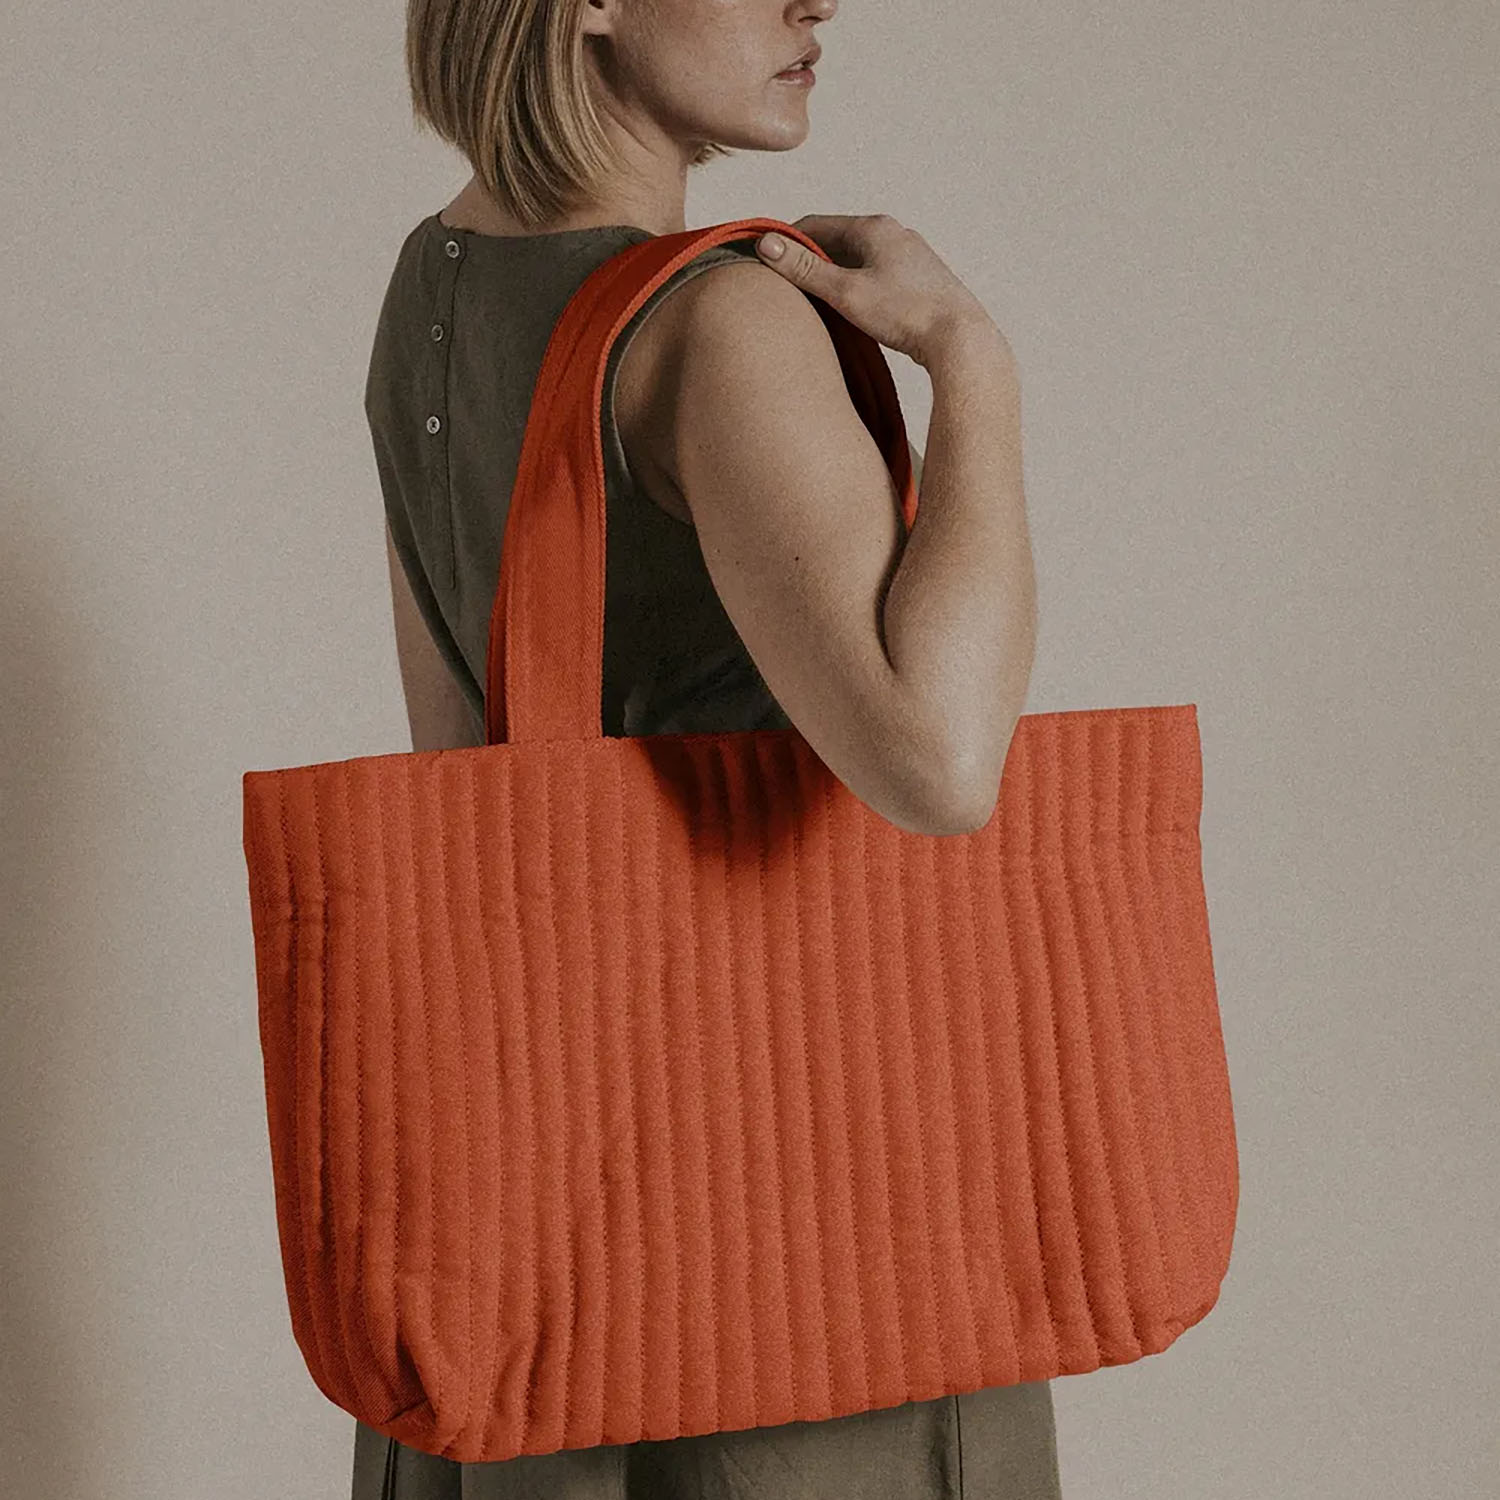 Medium Interlocking G tote bag in orange cotton canvas